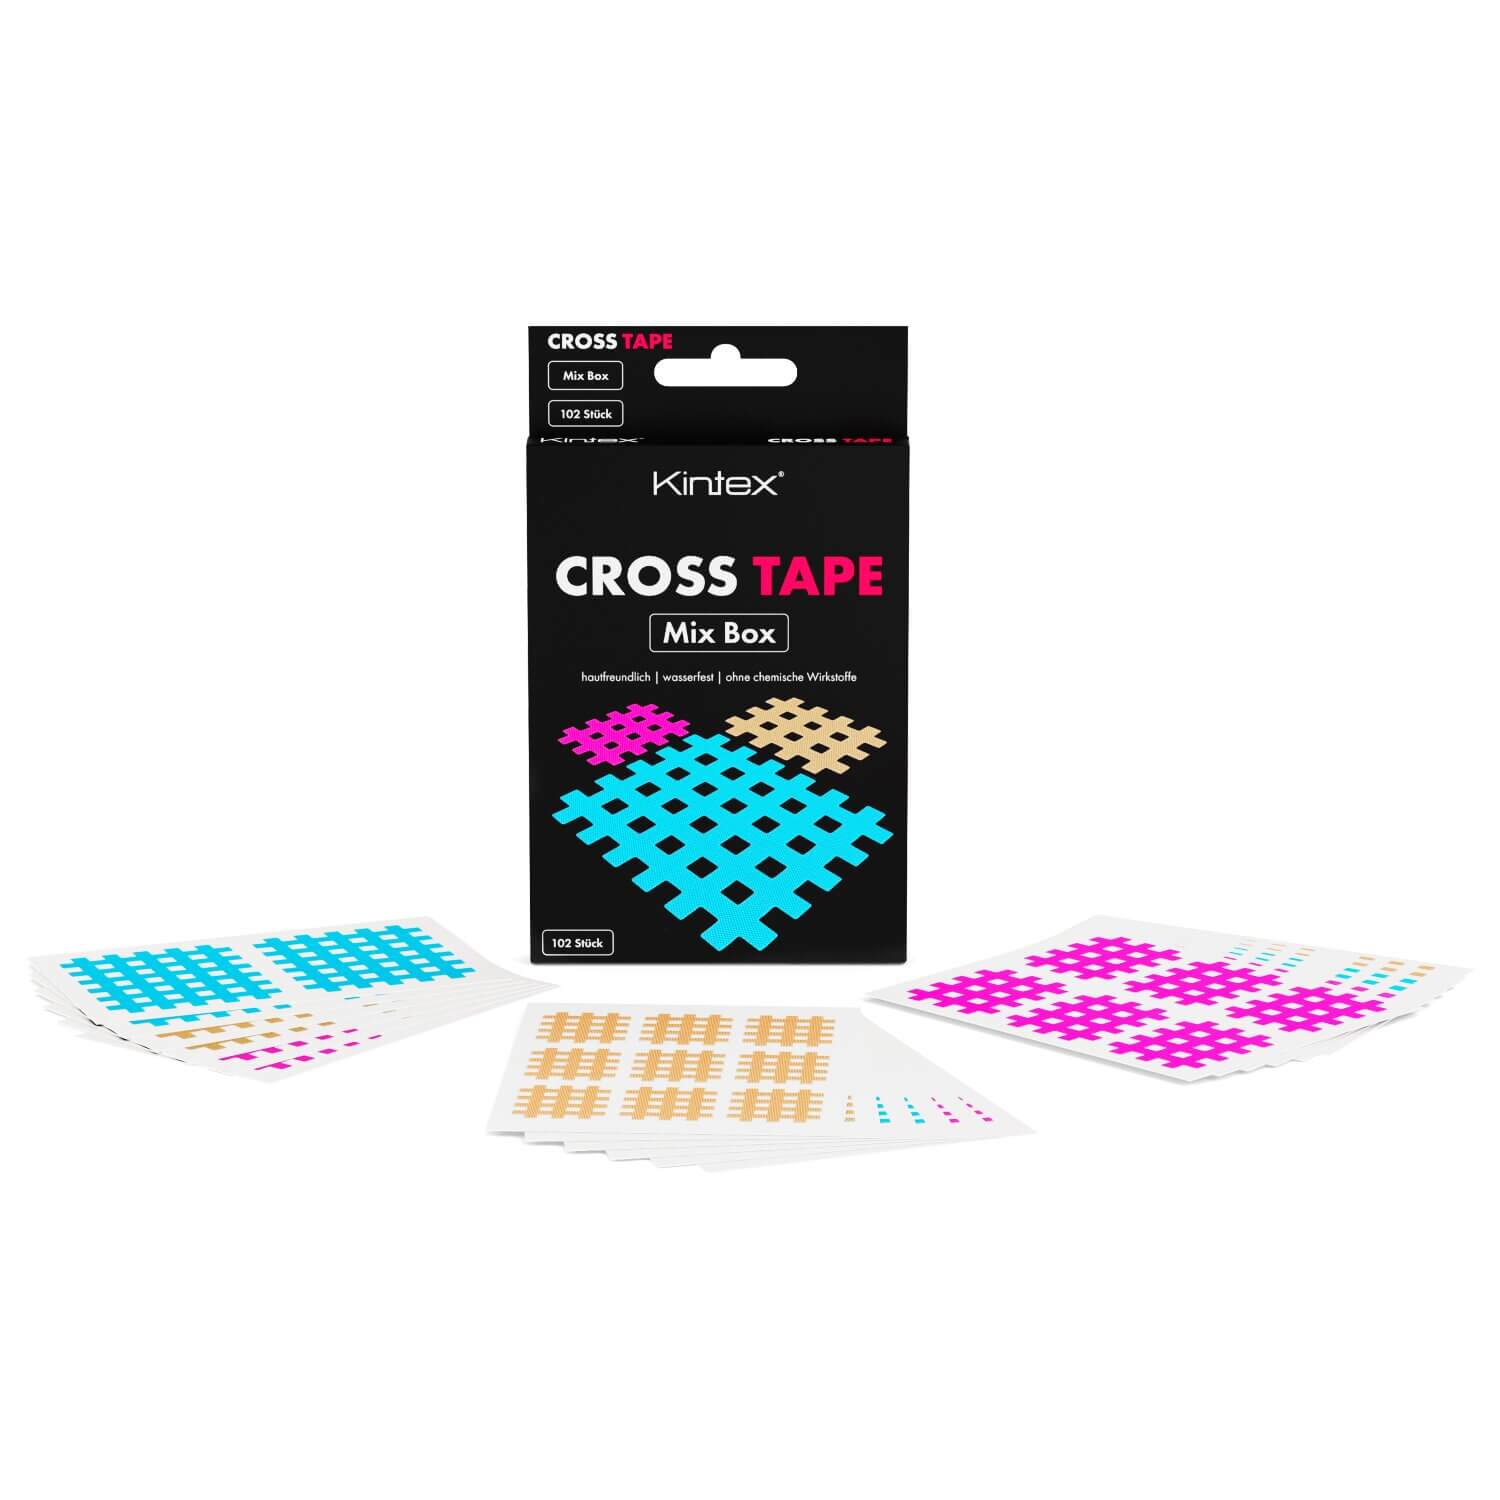 Kintex “Cross Tape” Mix-Box 